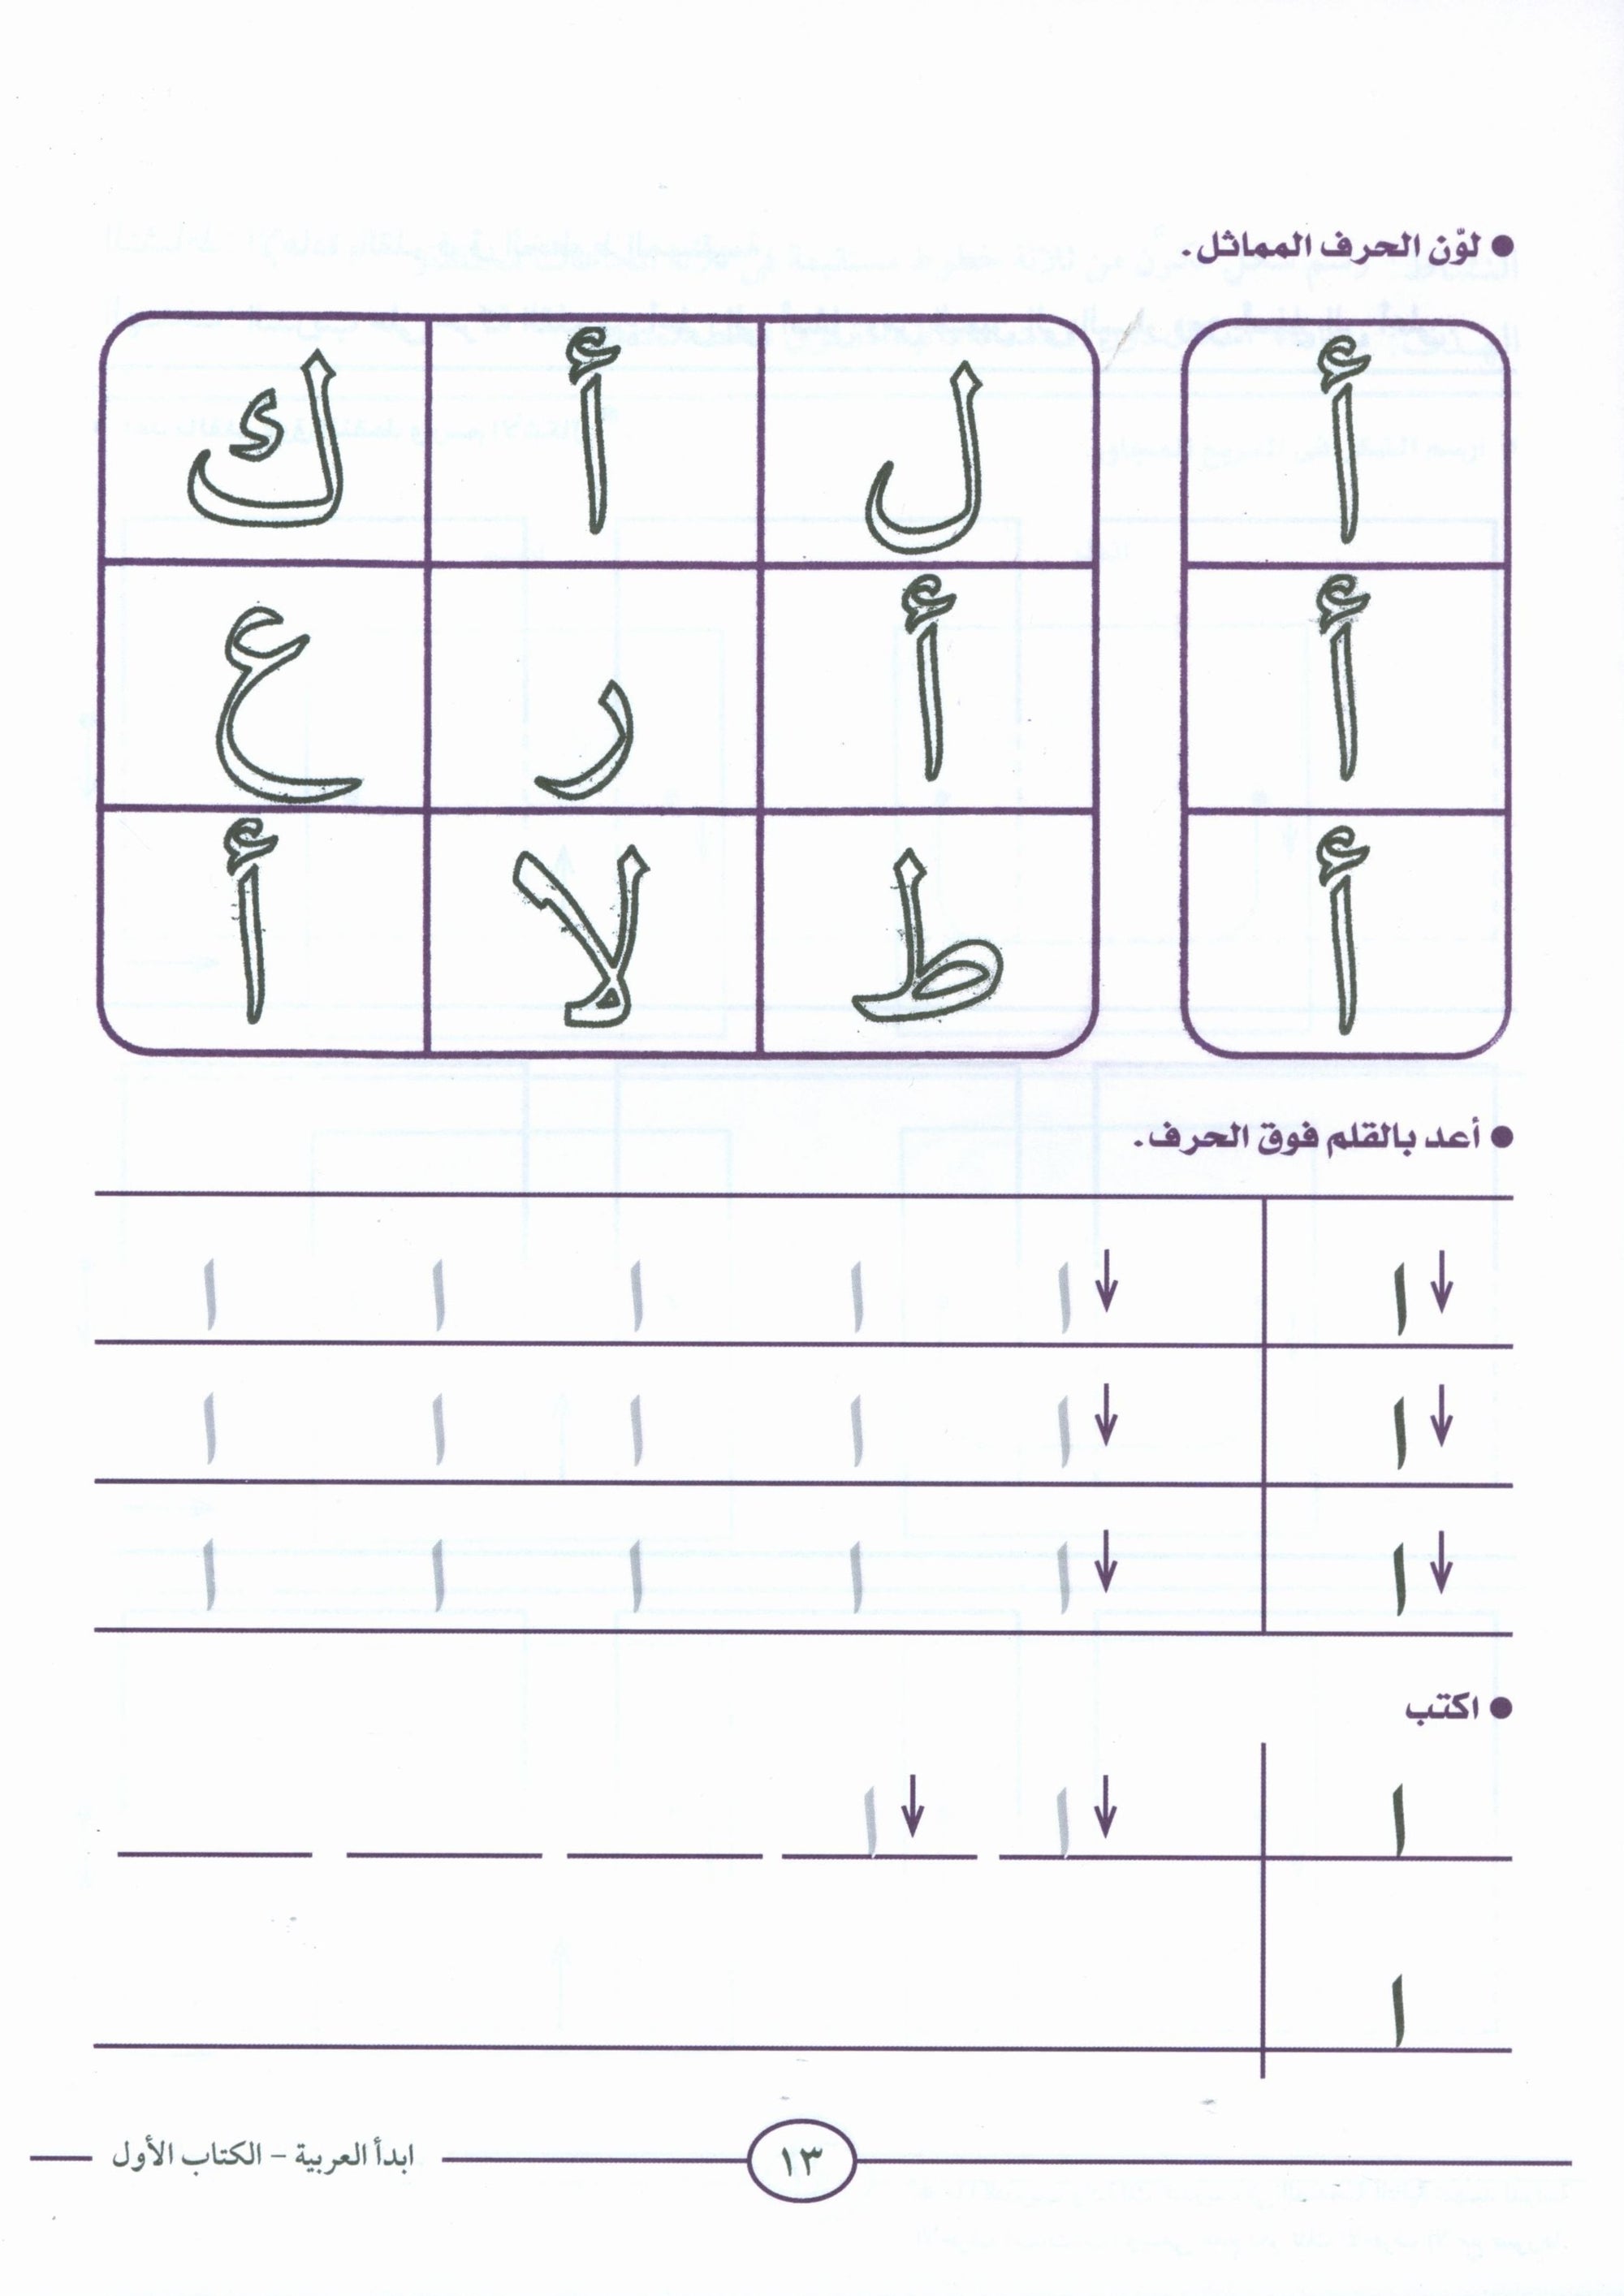 I Start Arabic Volume 1 أبدأ العربية